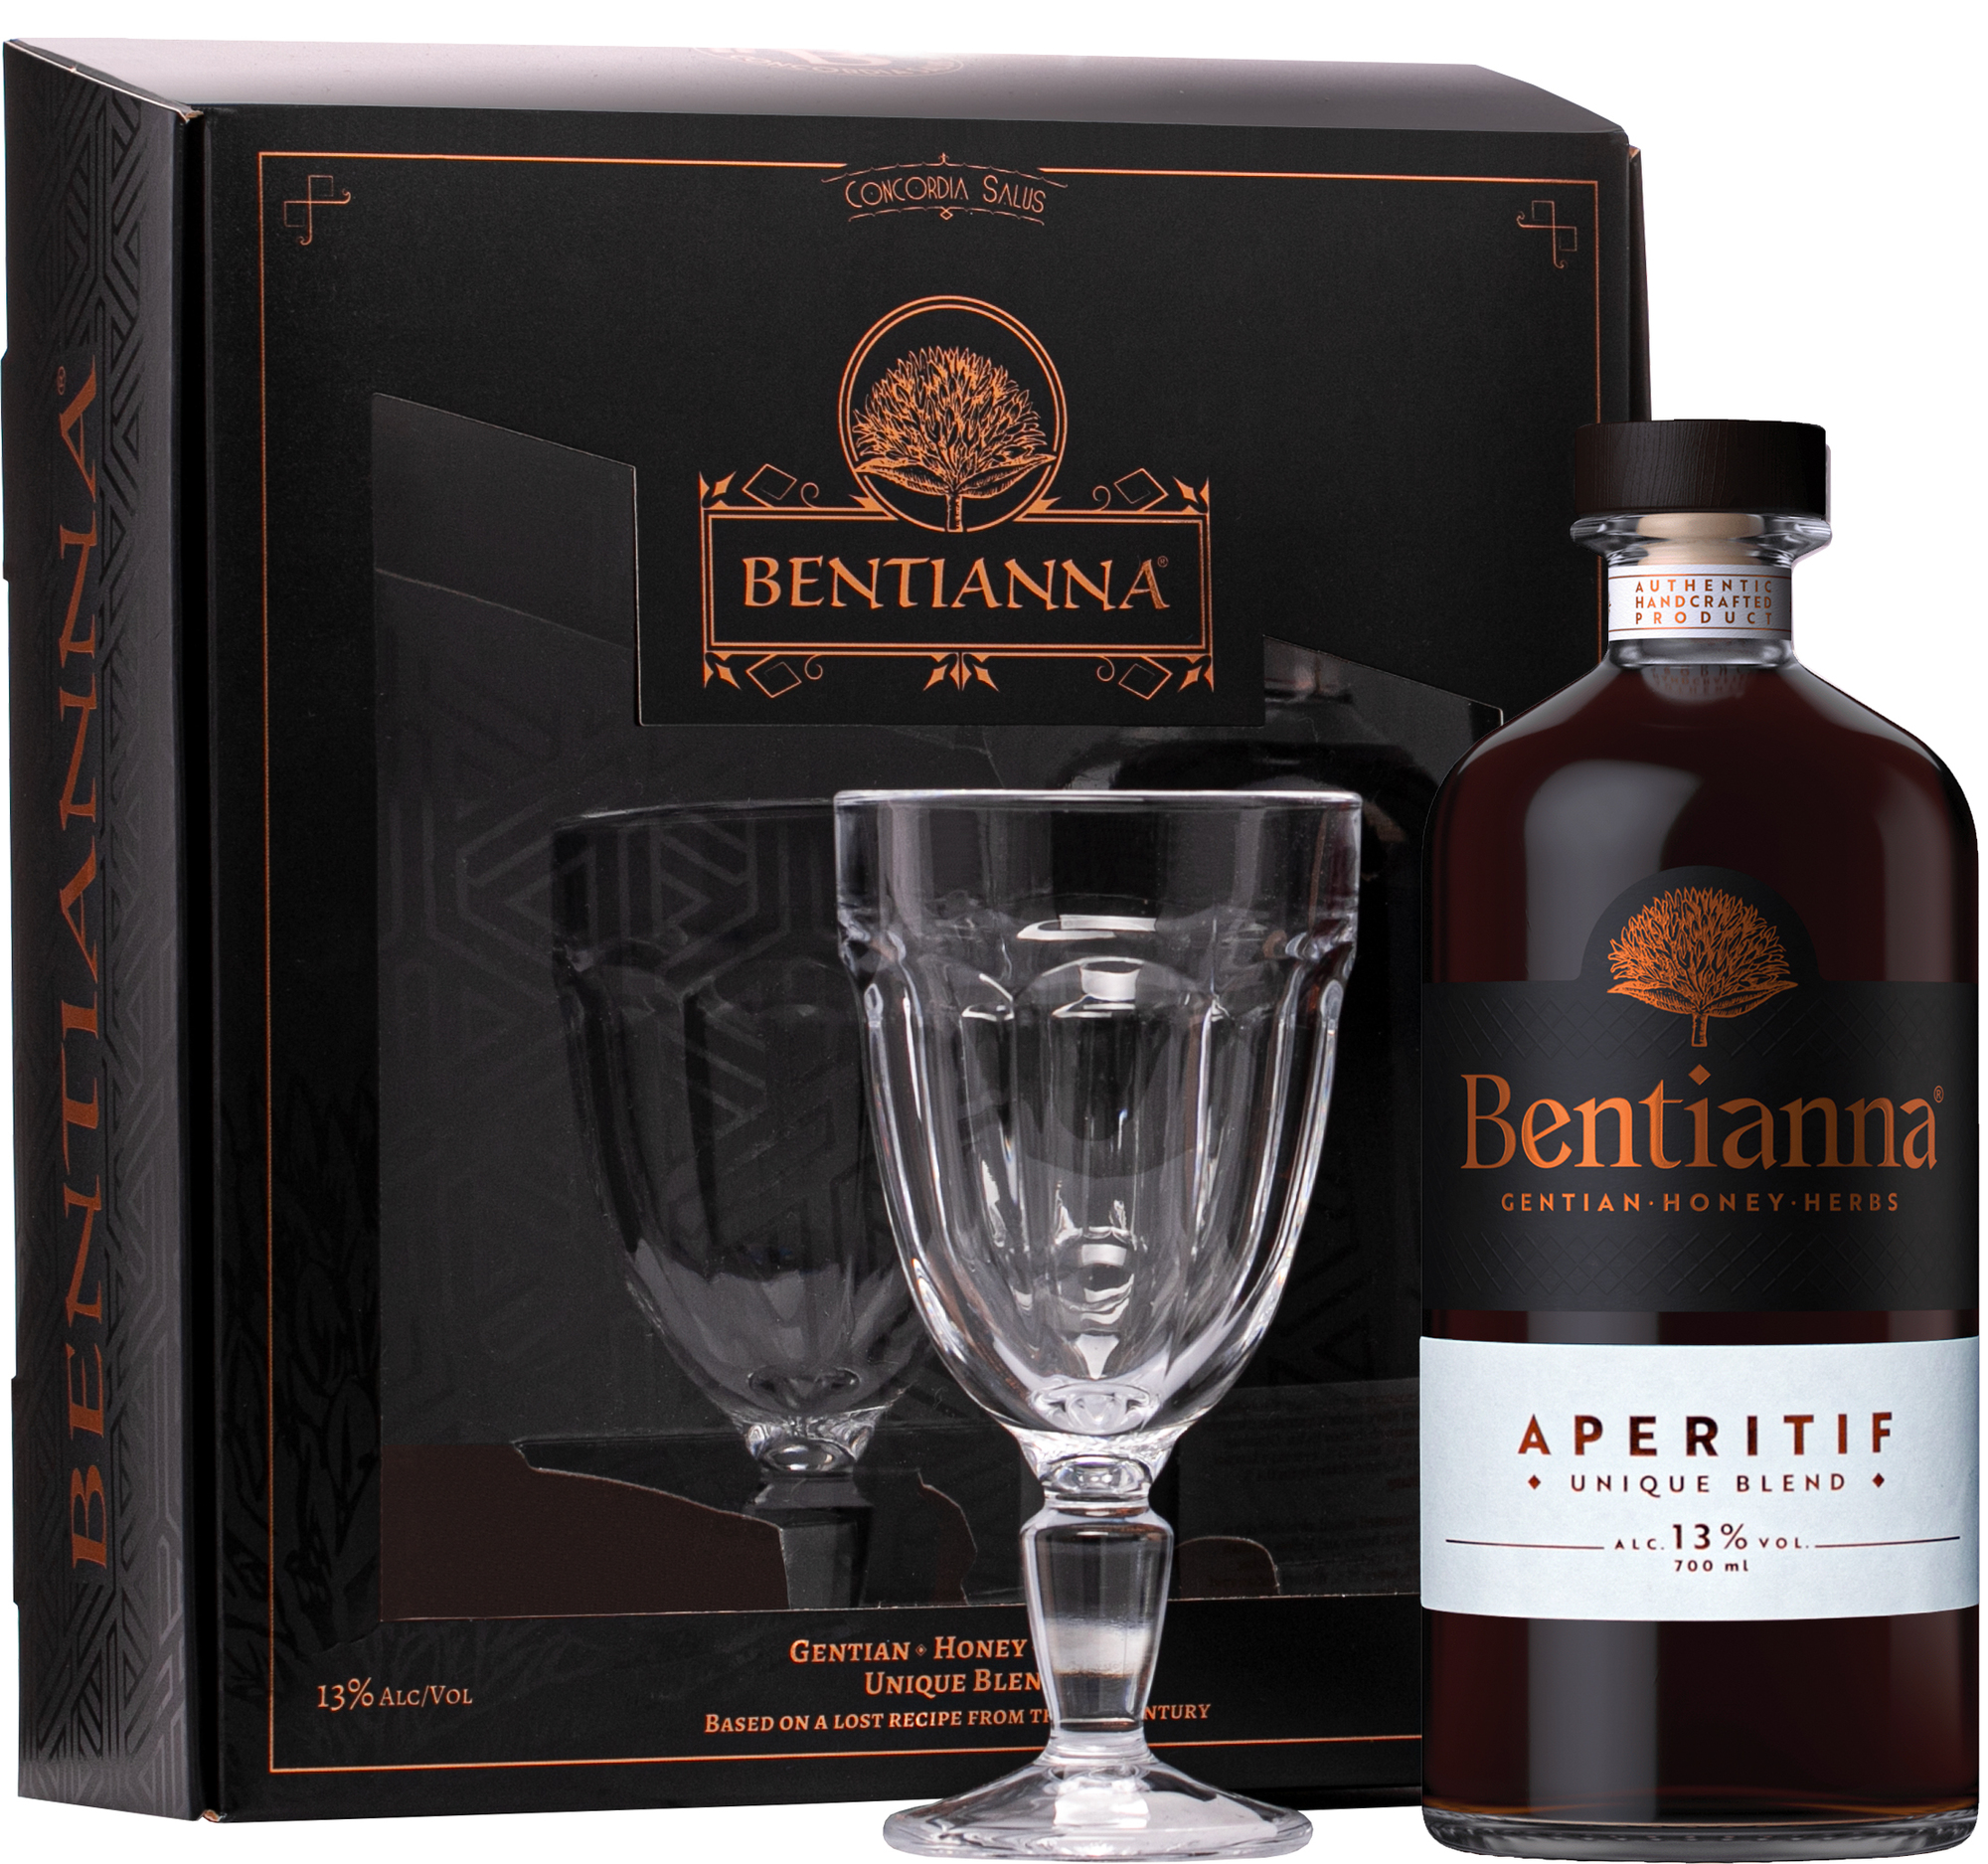 Bentianna Aperitif + 1 Sklenice 13% 0,7L (dárkové balení s 1 sklenicí)